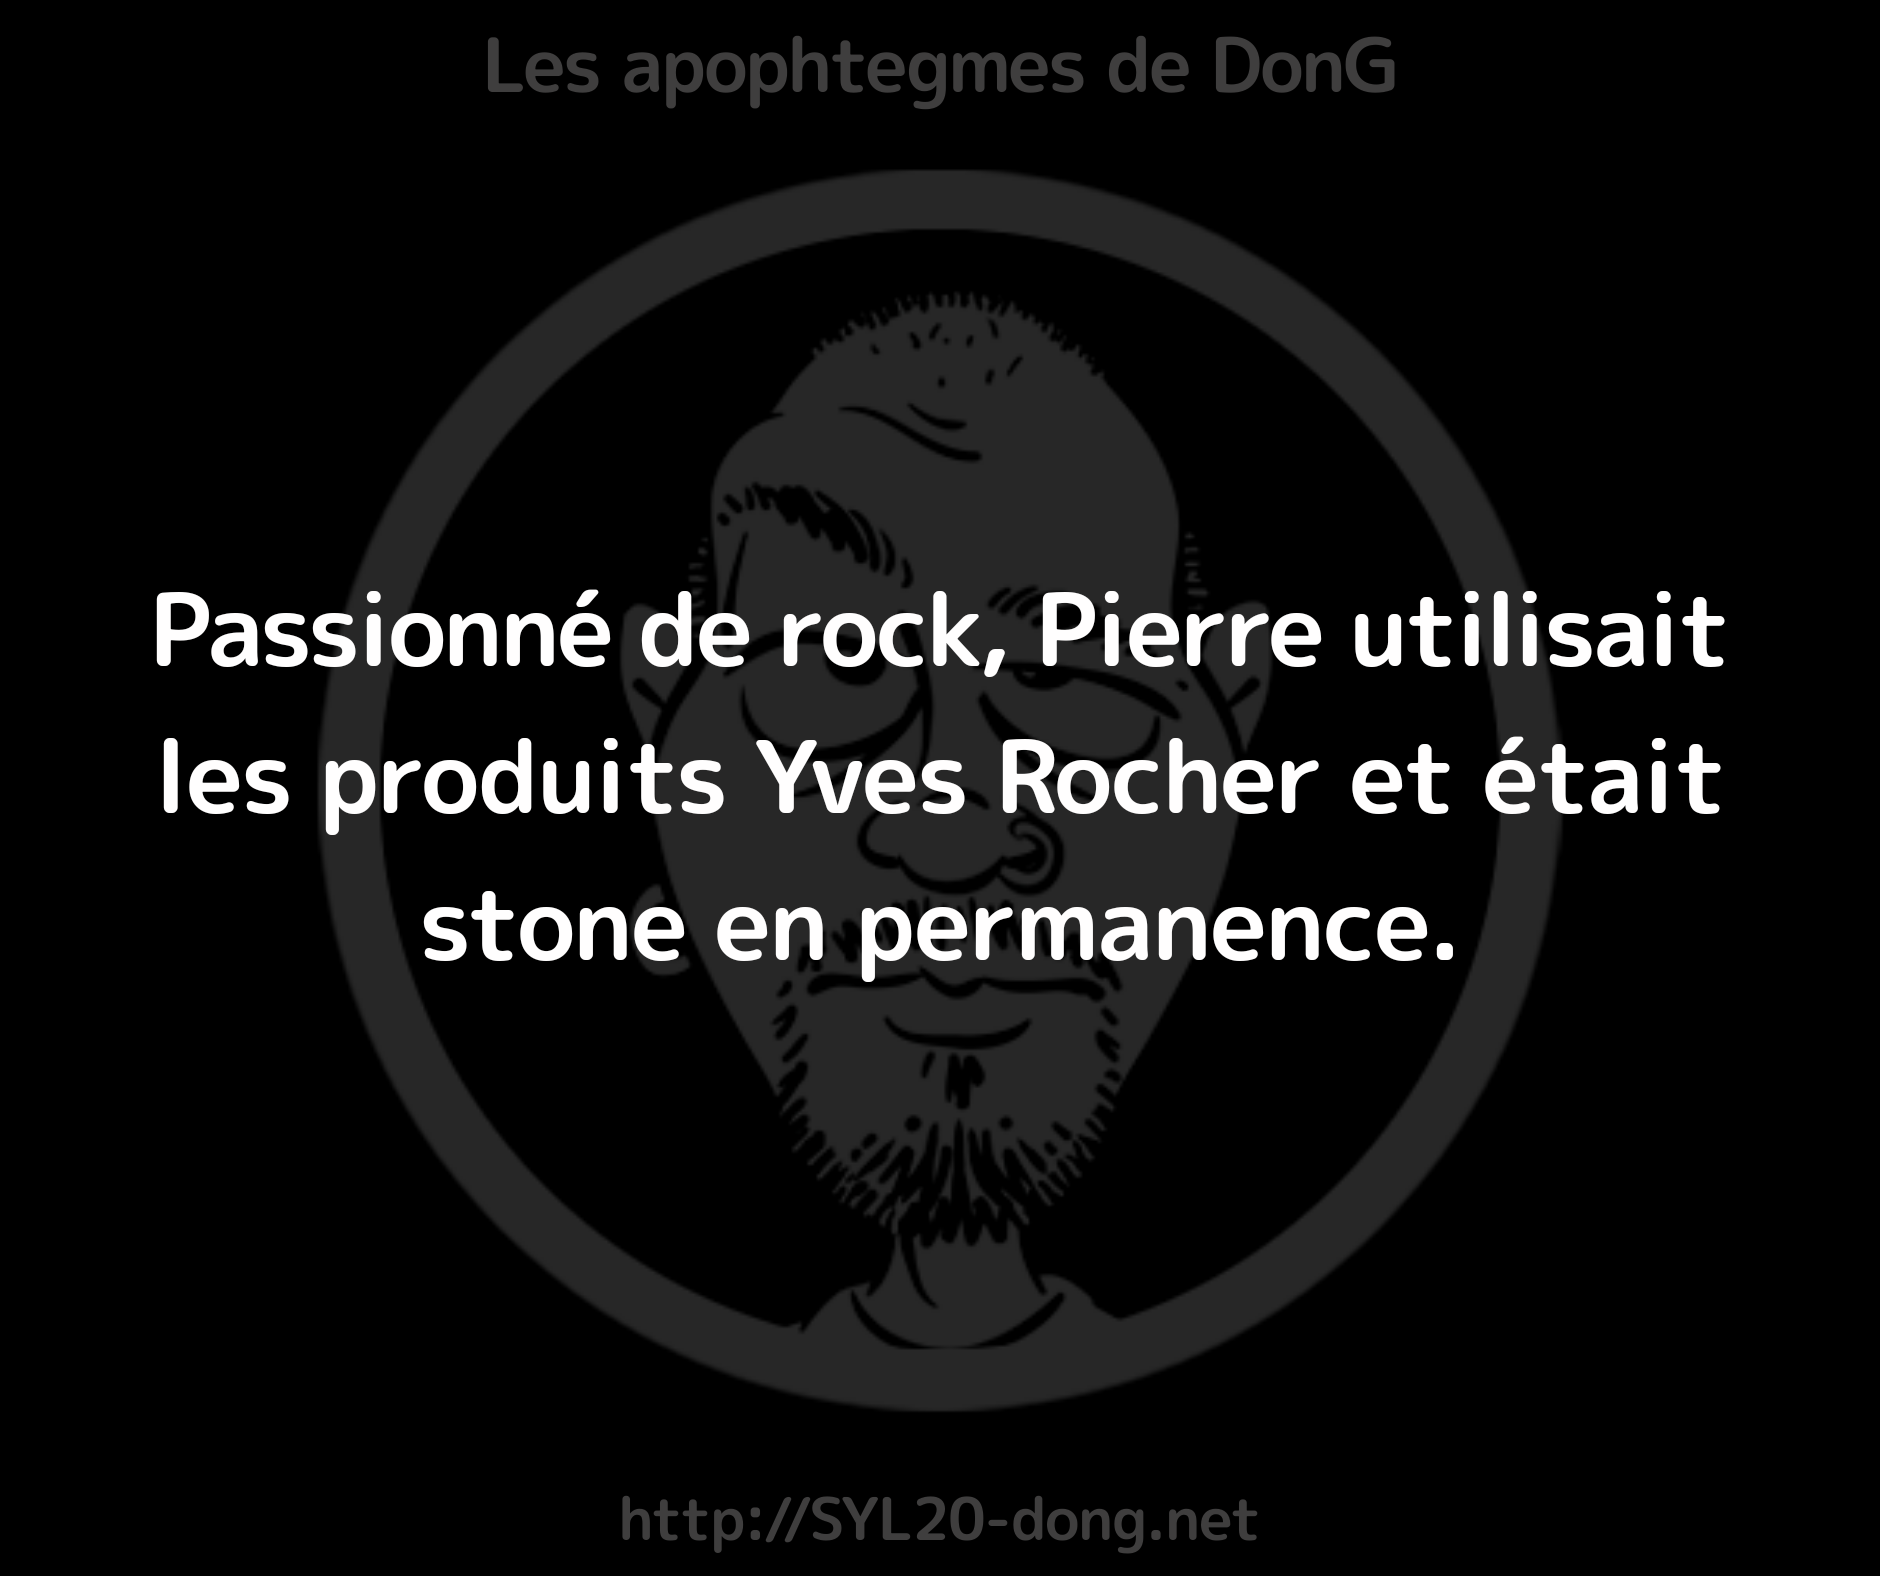 Rock. Passionné de rock, Pierre utilisait les produits Yves Rocher et était stone en permanence.